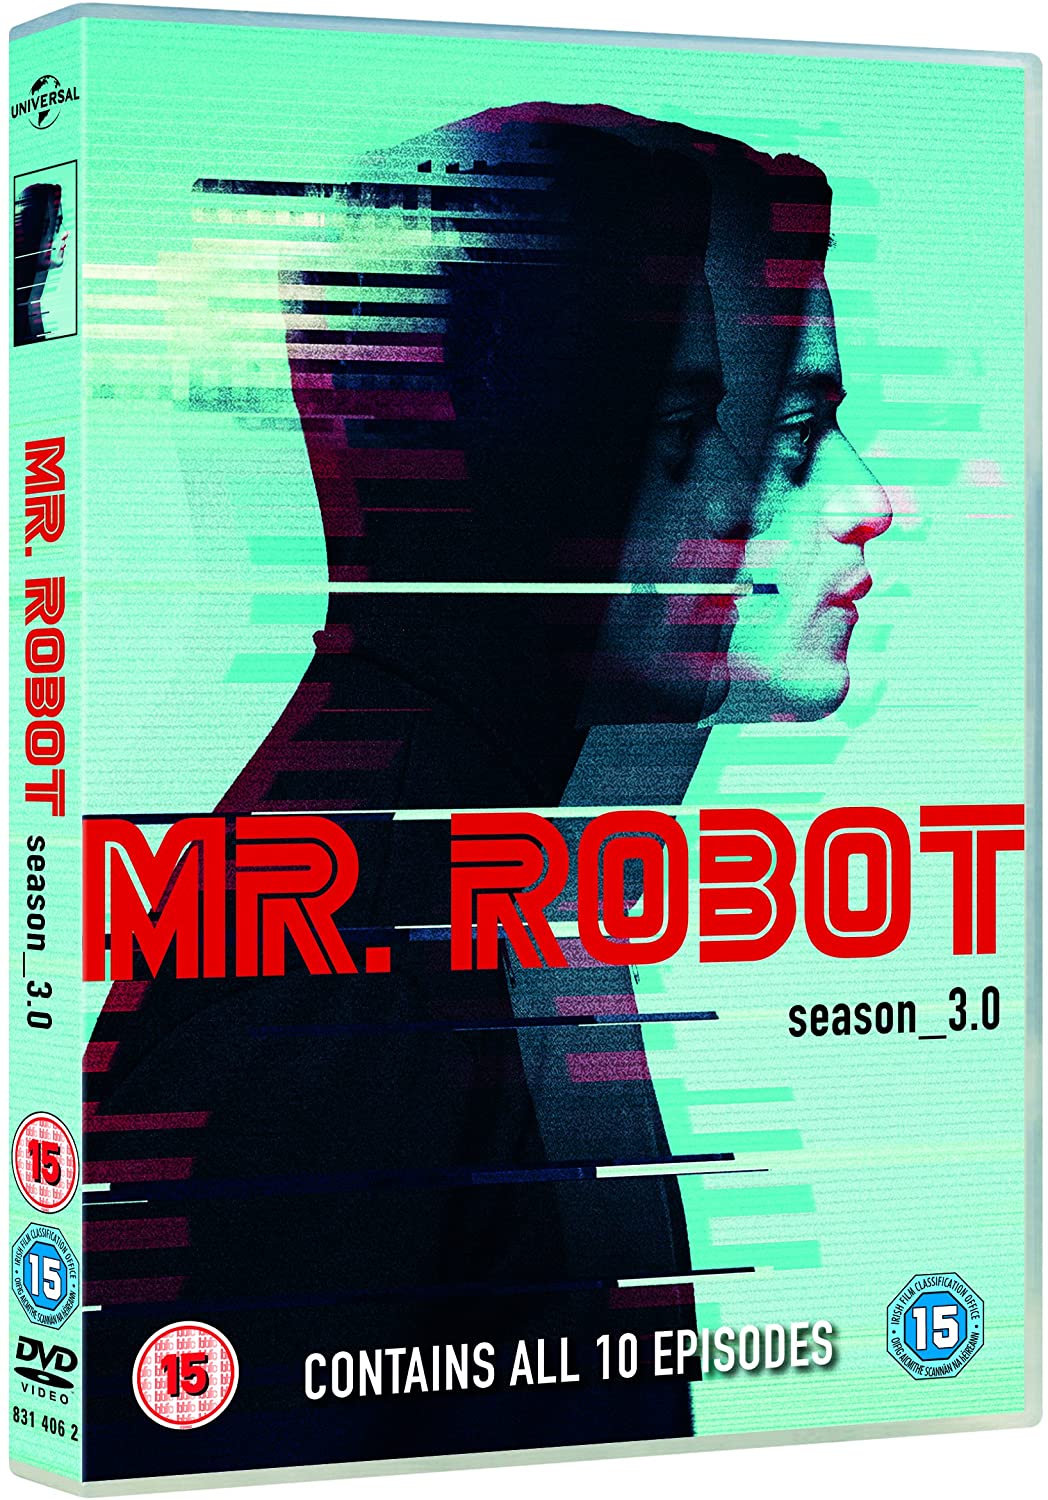 Mr. Robot: Season 3 (DVD)